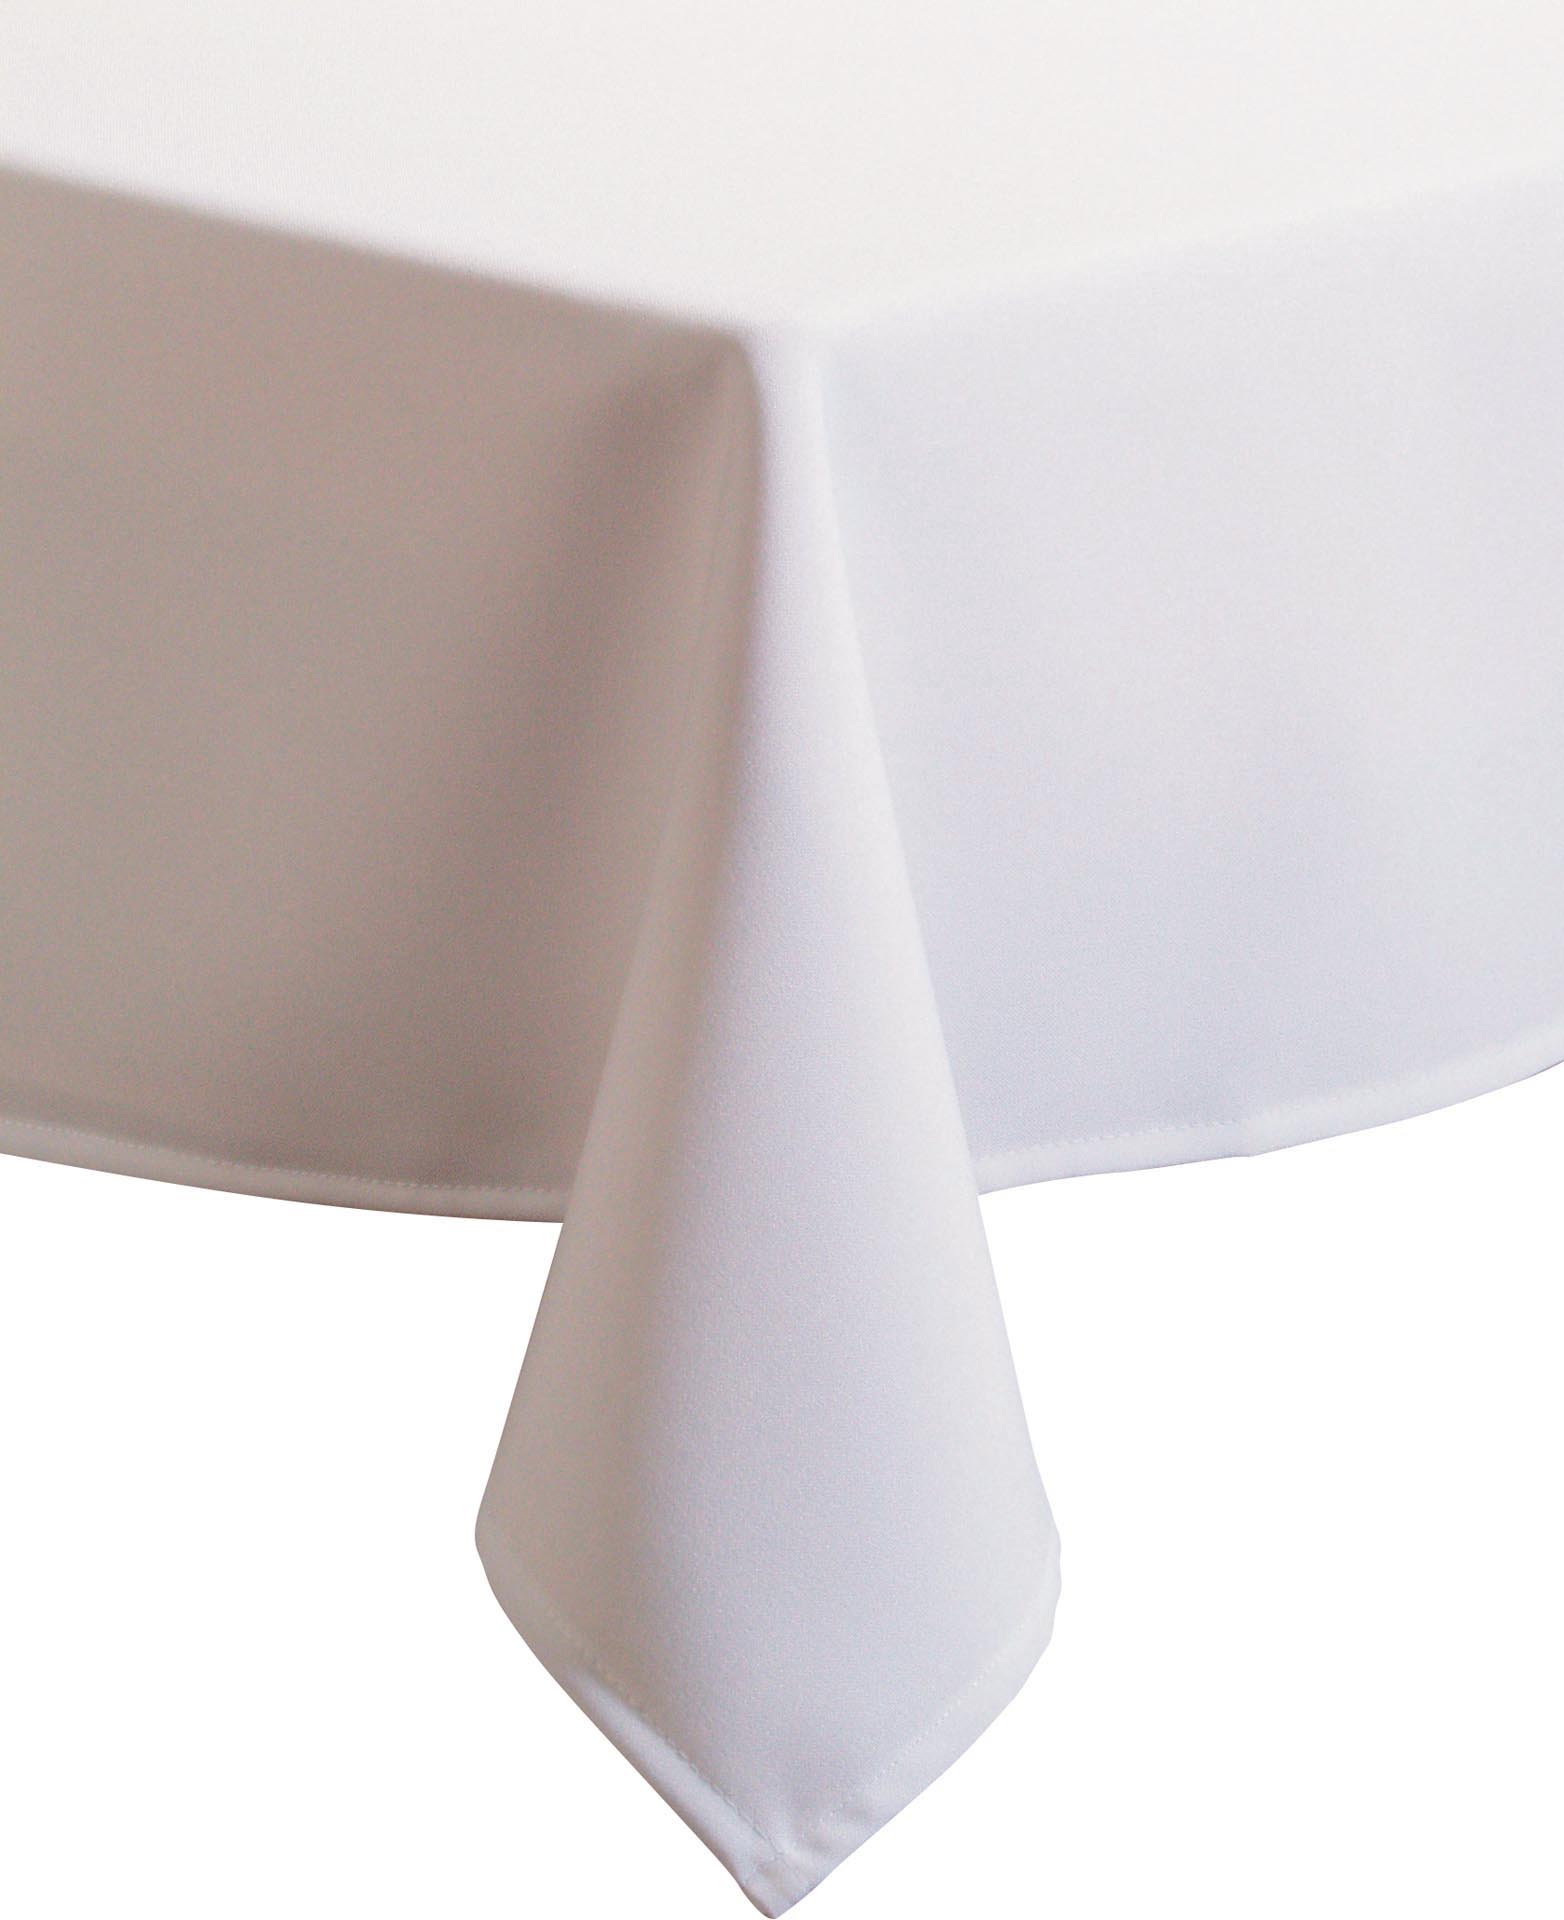 Tischdecke weiß Excaliber 80x80 cm 100% Polyester, auch als Mitteldecke geeignet